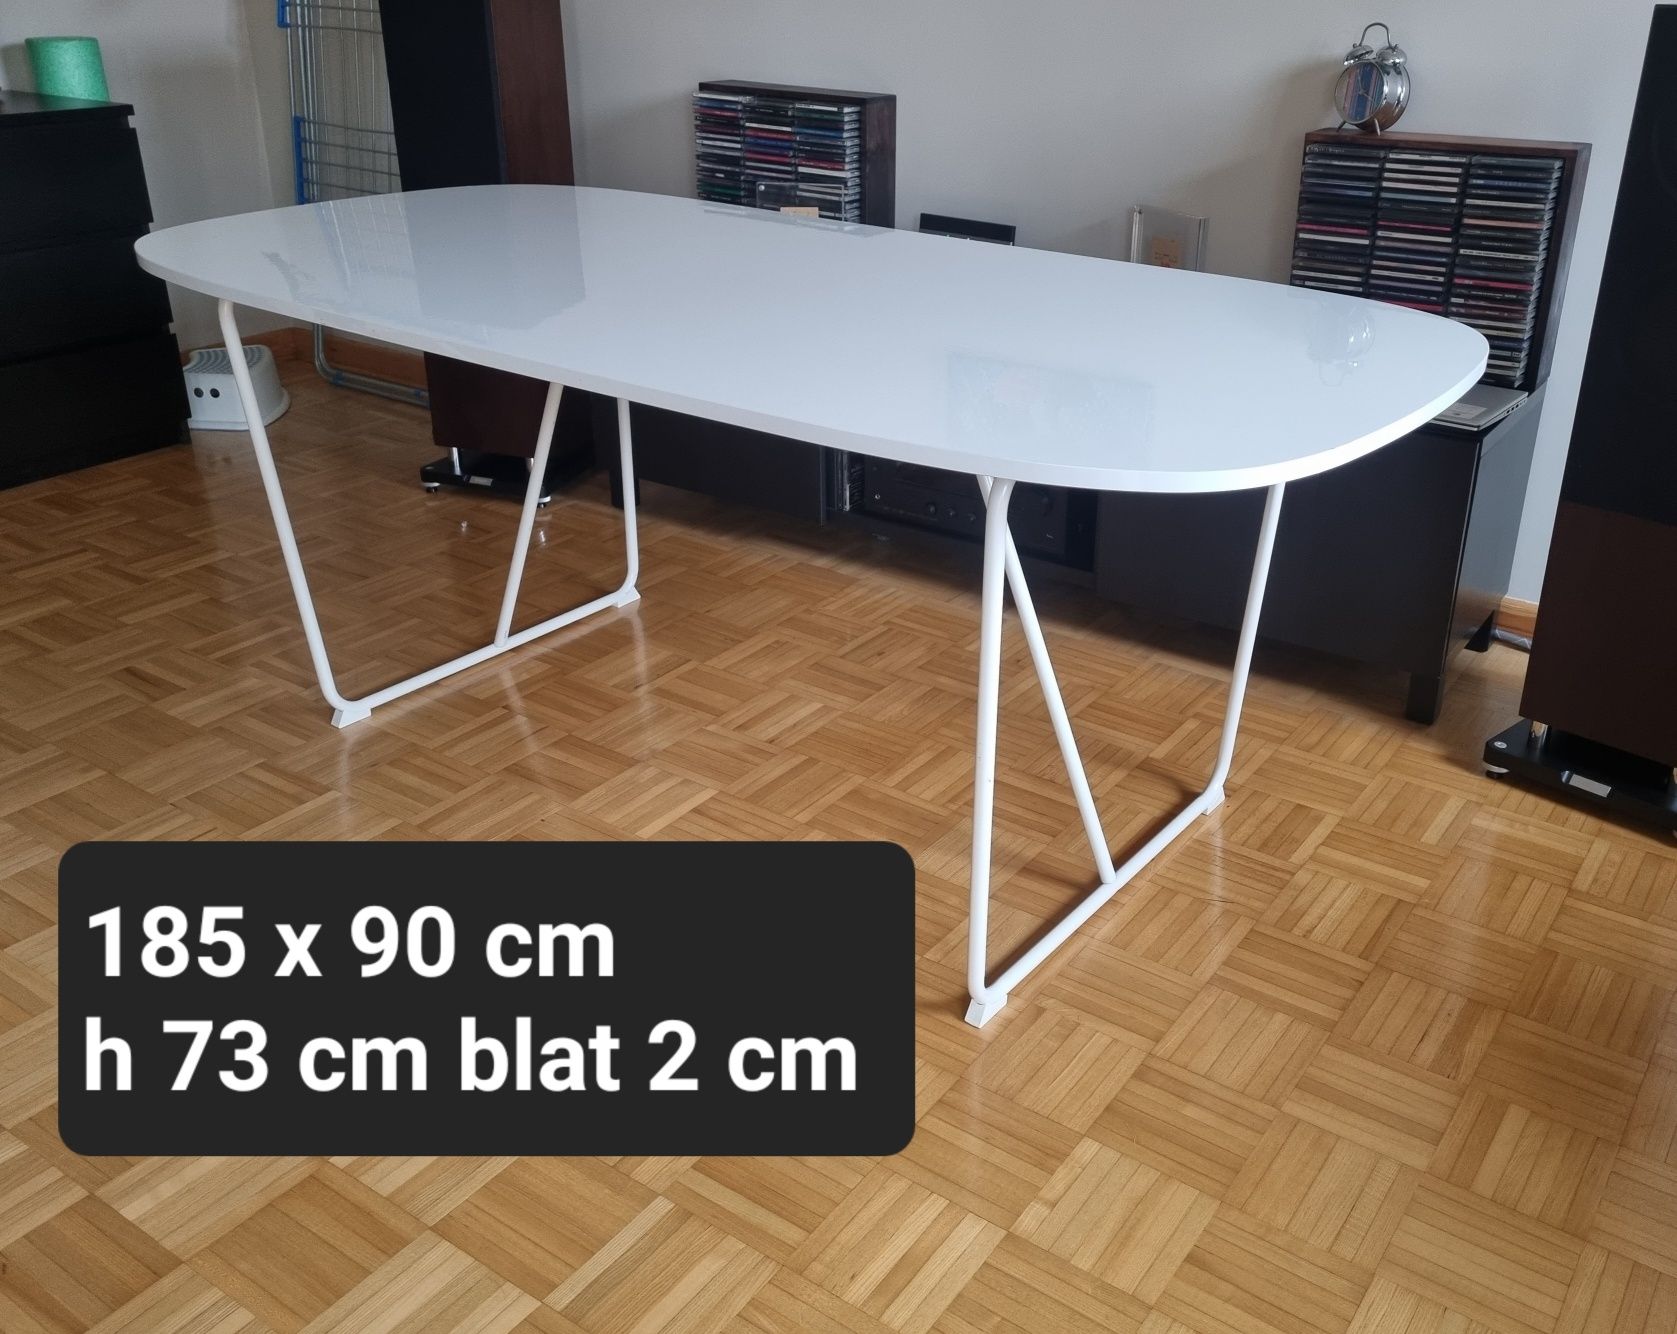 Biały duży stół IKEA 180 x 90 cm